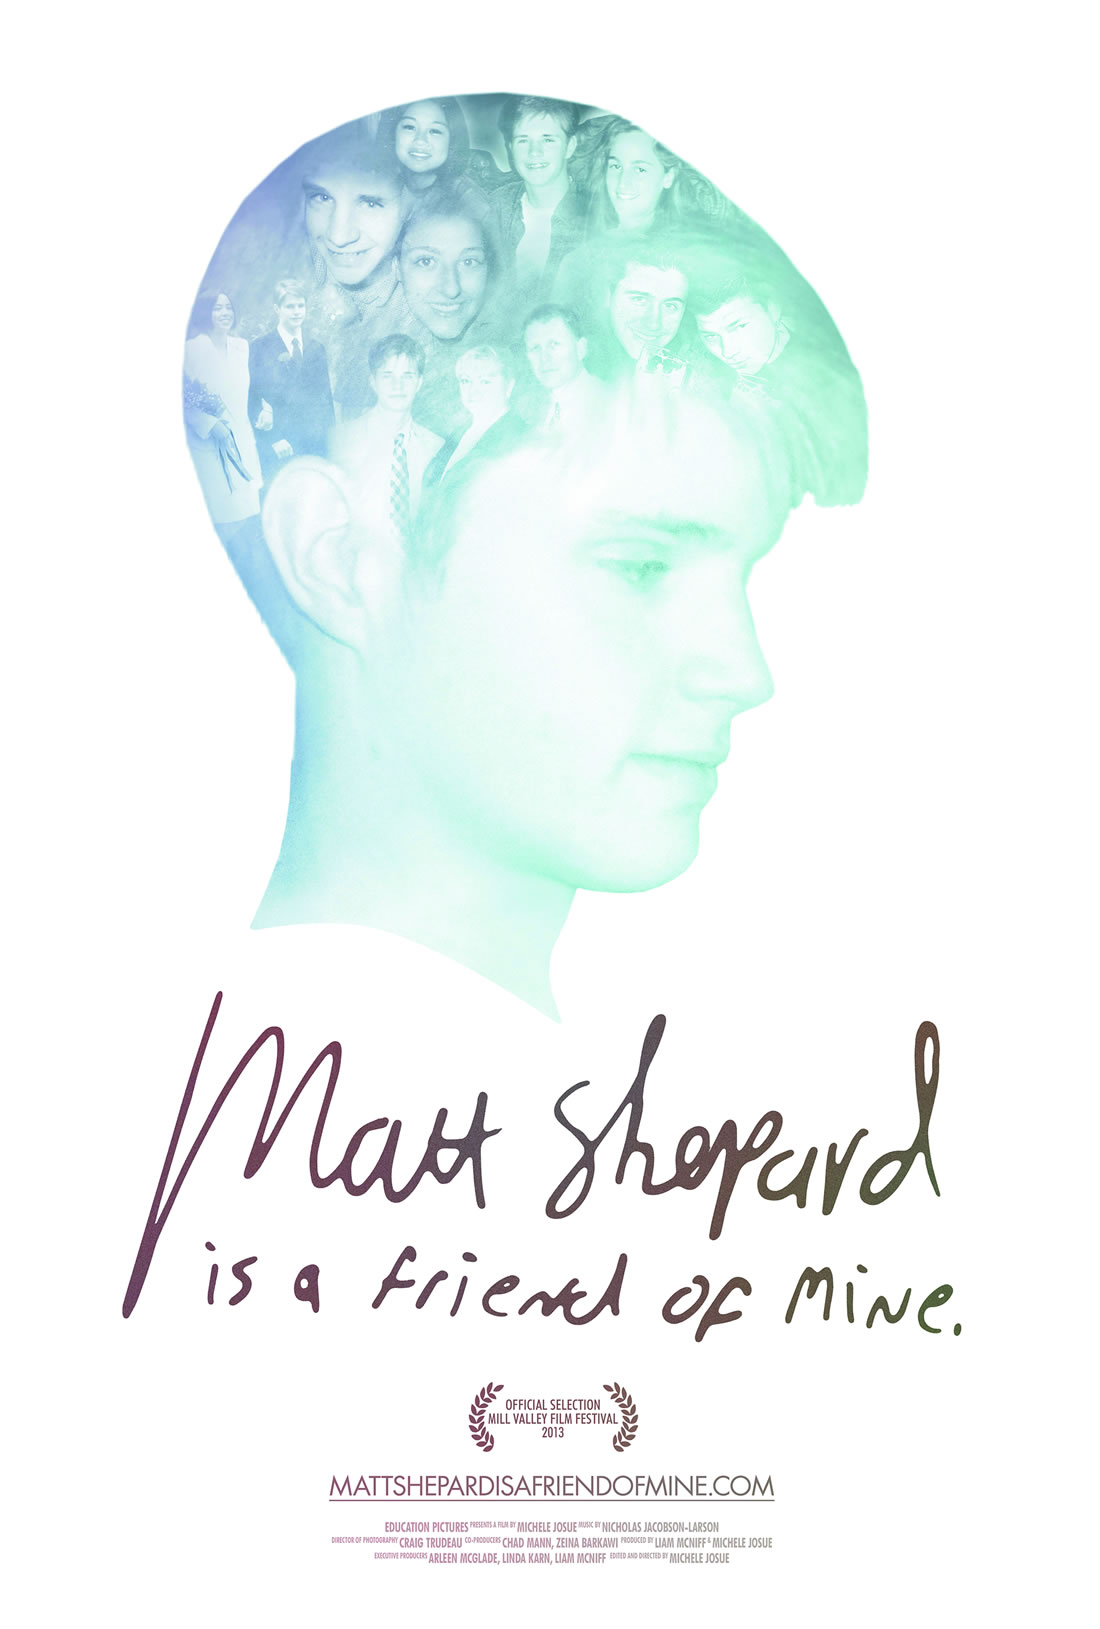 MATT SHEPARD IS A FRIEND OF MINE